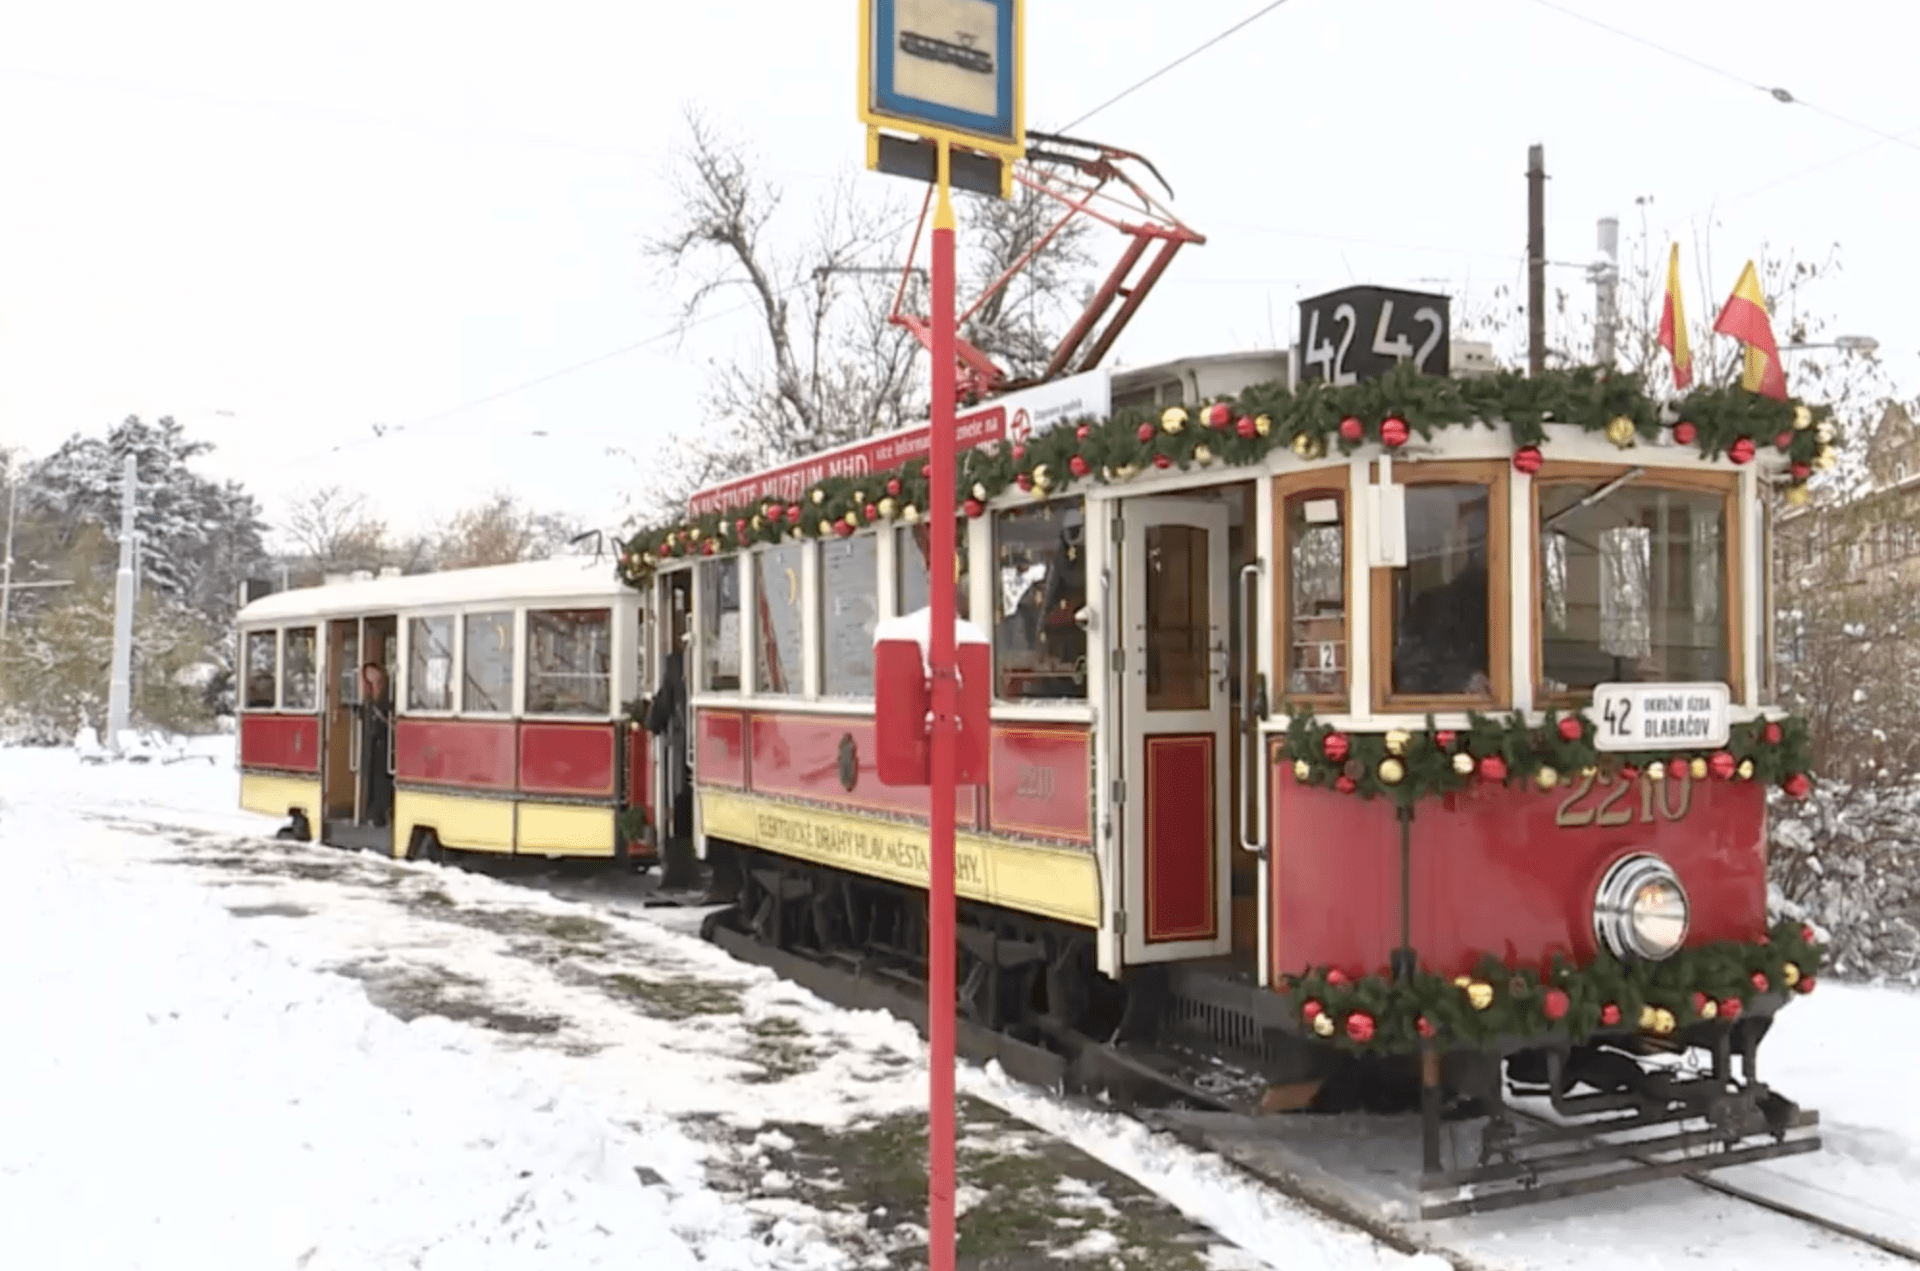 Historická, vánočně vyzdobená tramvaj linky č. 42